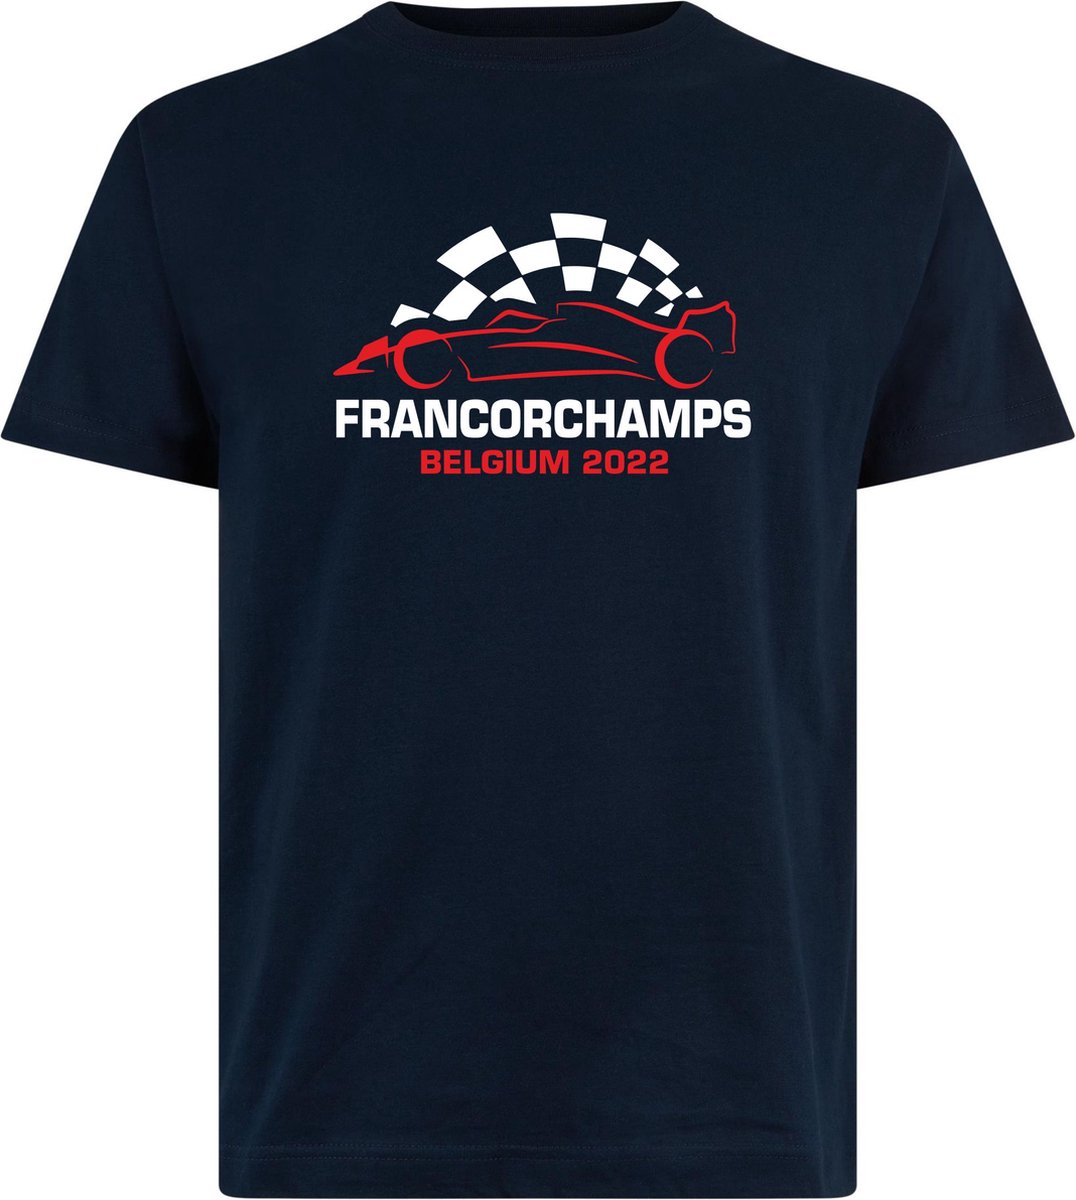 T-shirt kinderen Francorchamps Belgium 2022 met raceauto | Max Verstappen / Red Bull Racing / Formule 1 fan | Grand Prix Circuit Spa-Francorchamps | kleding shirt | Navy | maat 164